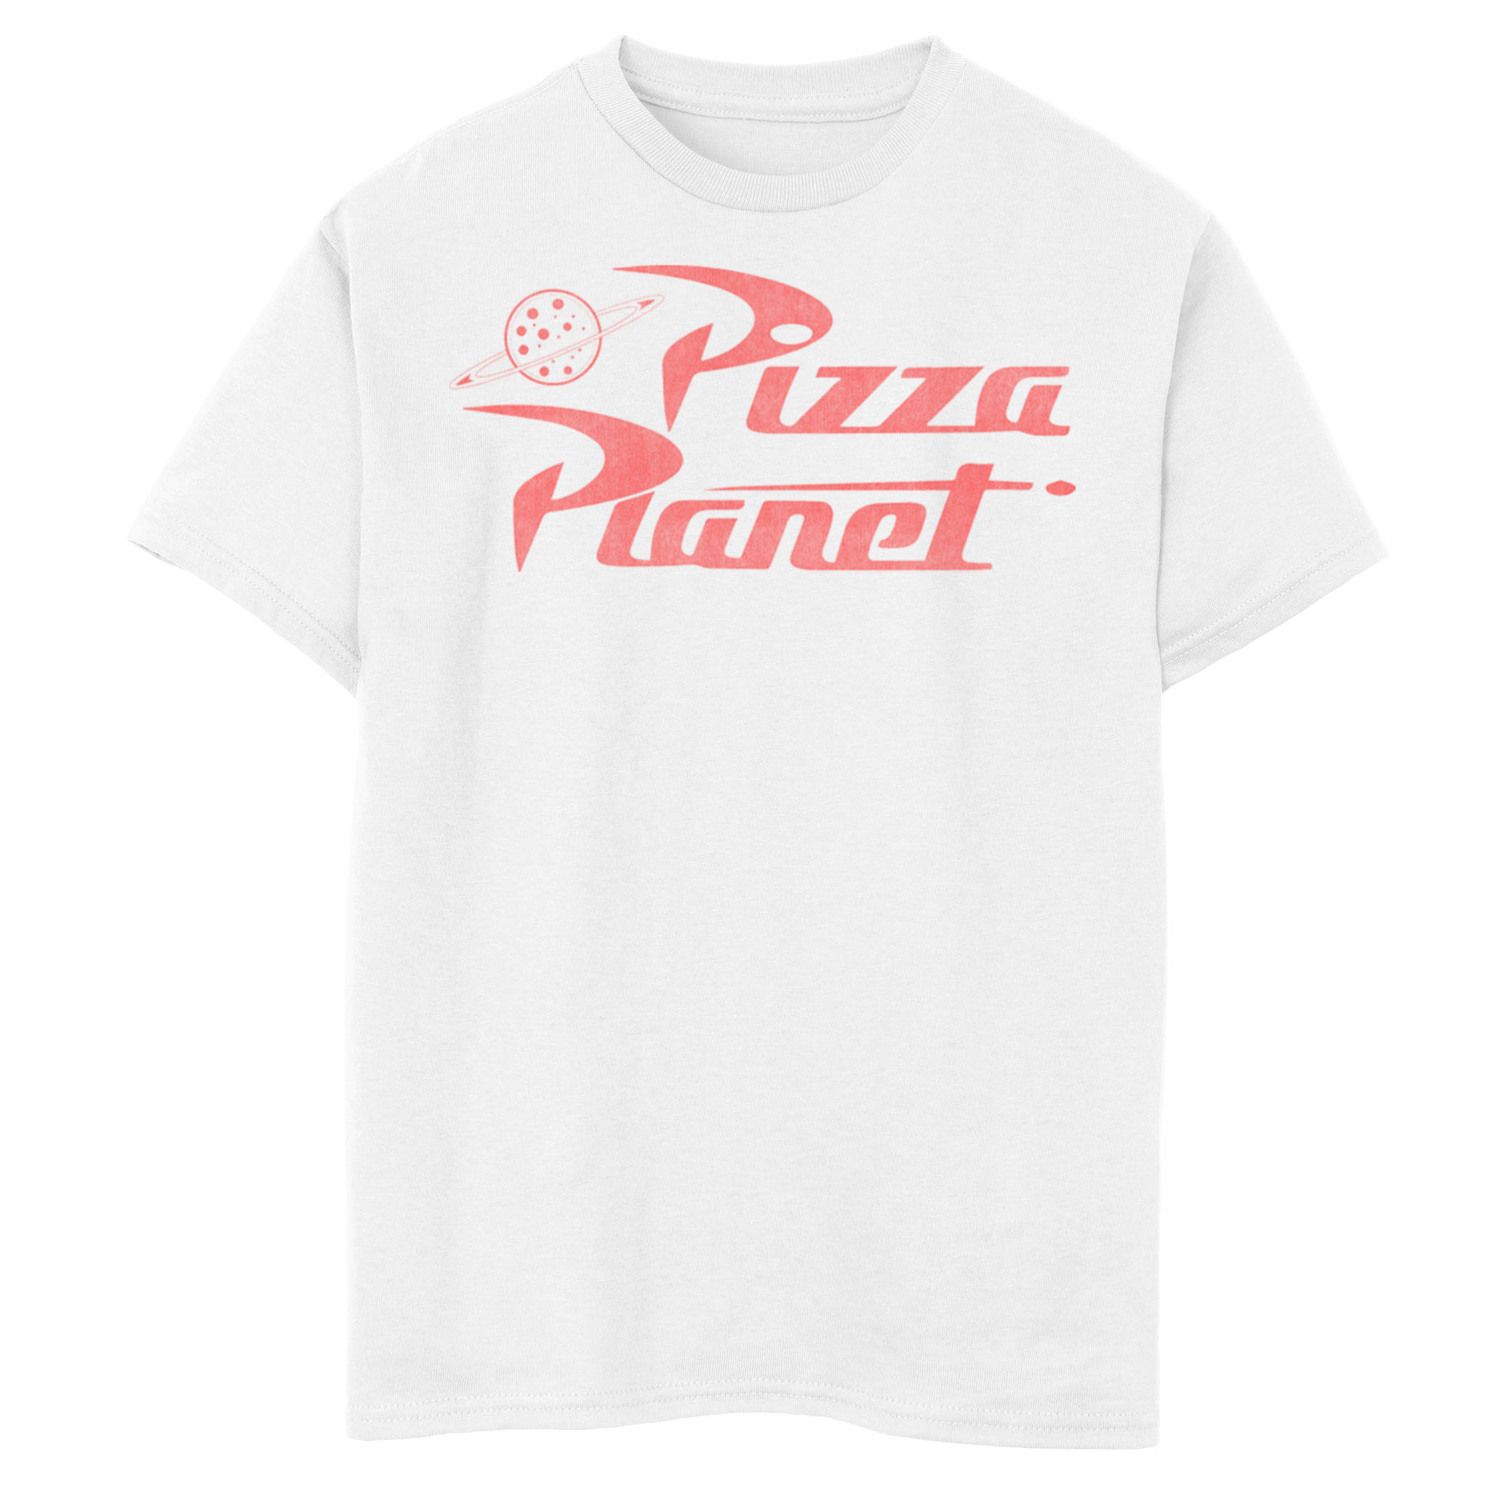 Футболка с логотипом Disney/Pixar's Toy Story для мальчиков 8–20 лет Pizza Planet Disney / Pixar, белый футболка с клетчатым логотипом disney pixar s toy story для мальчиков 8–20 лет pizza planet disney pixar